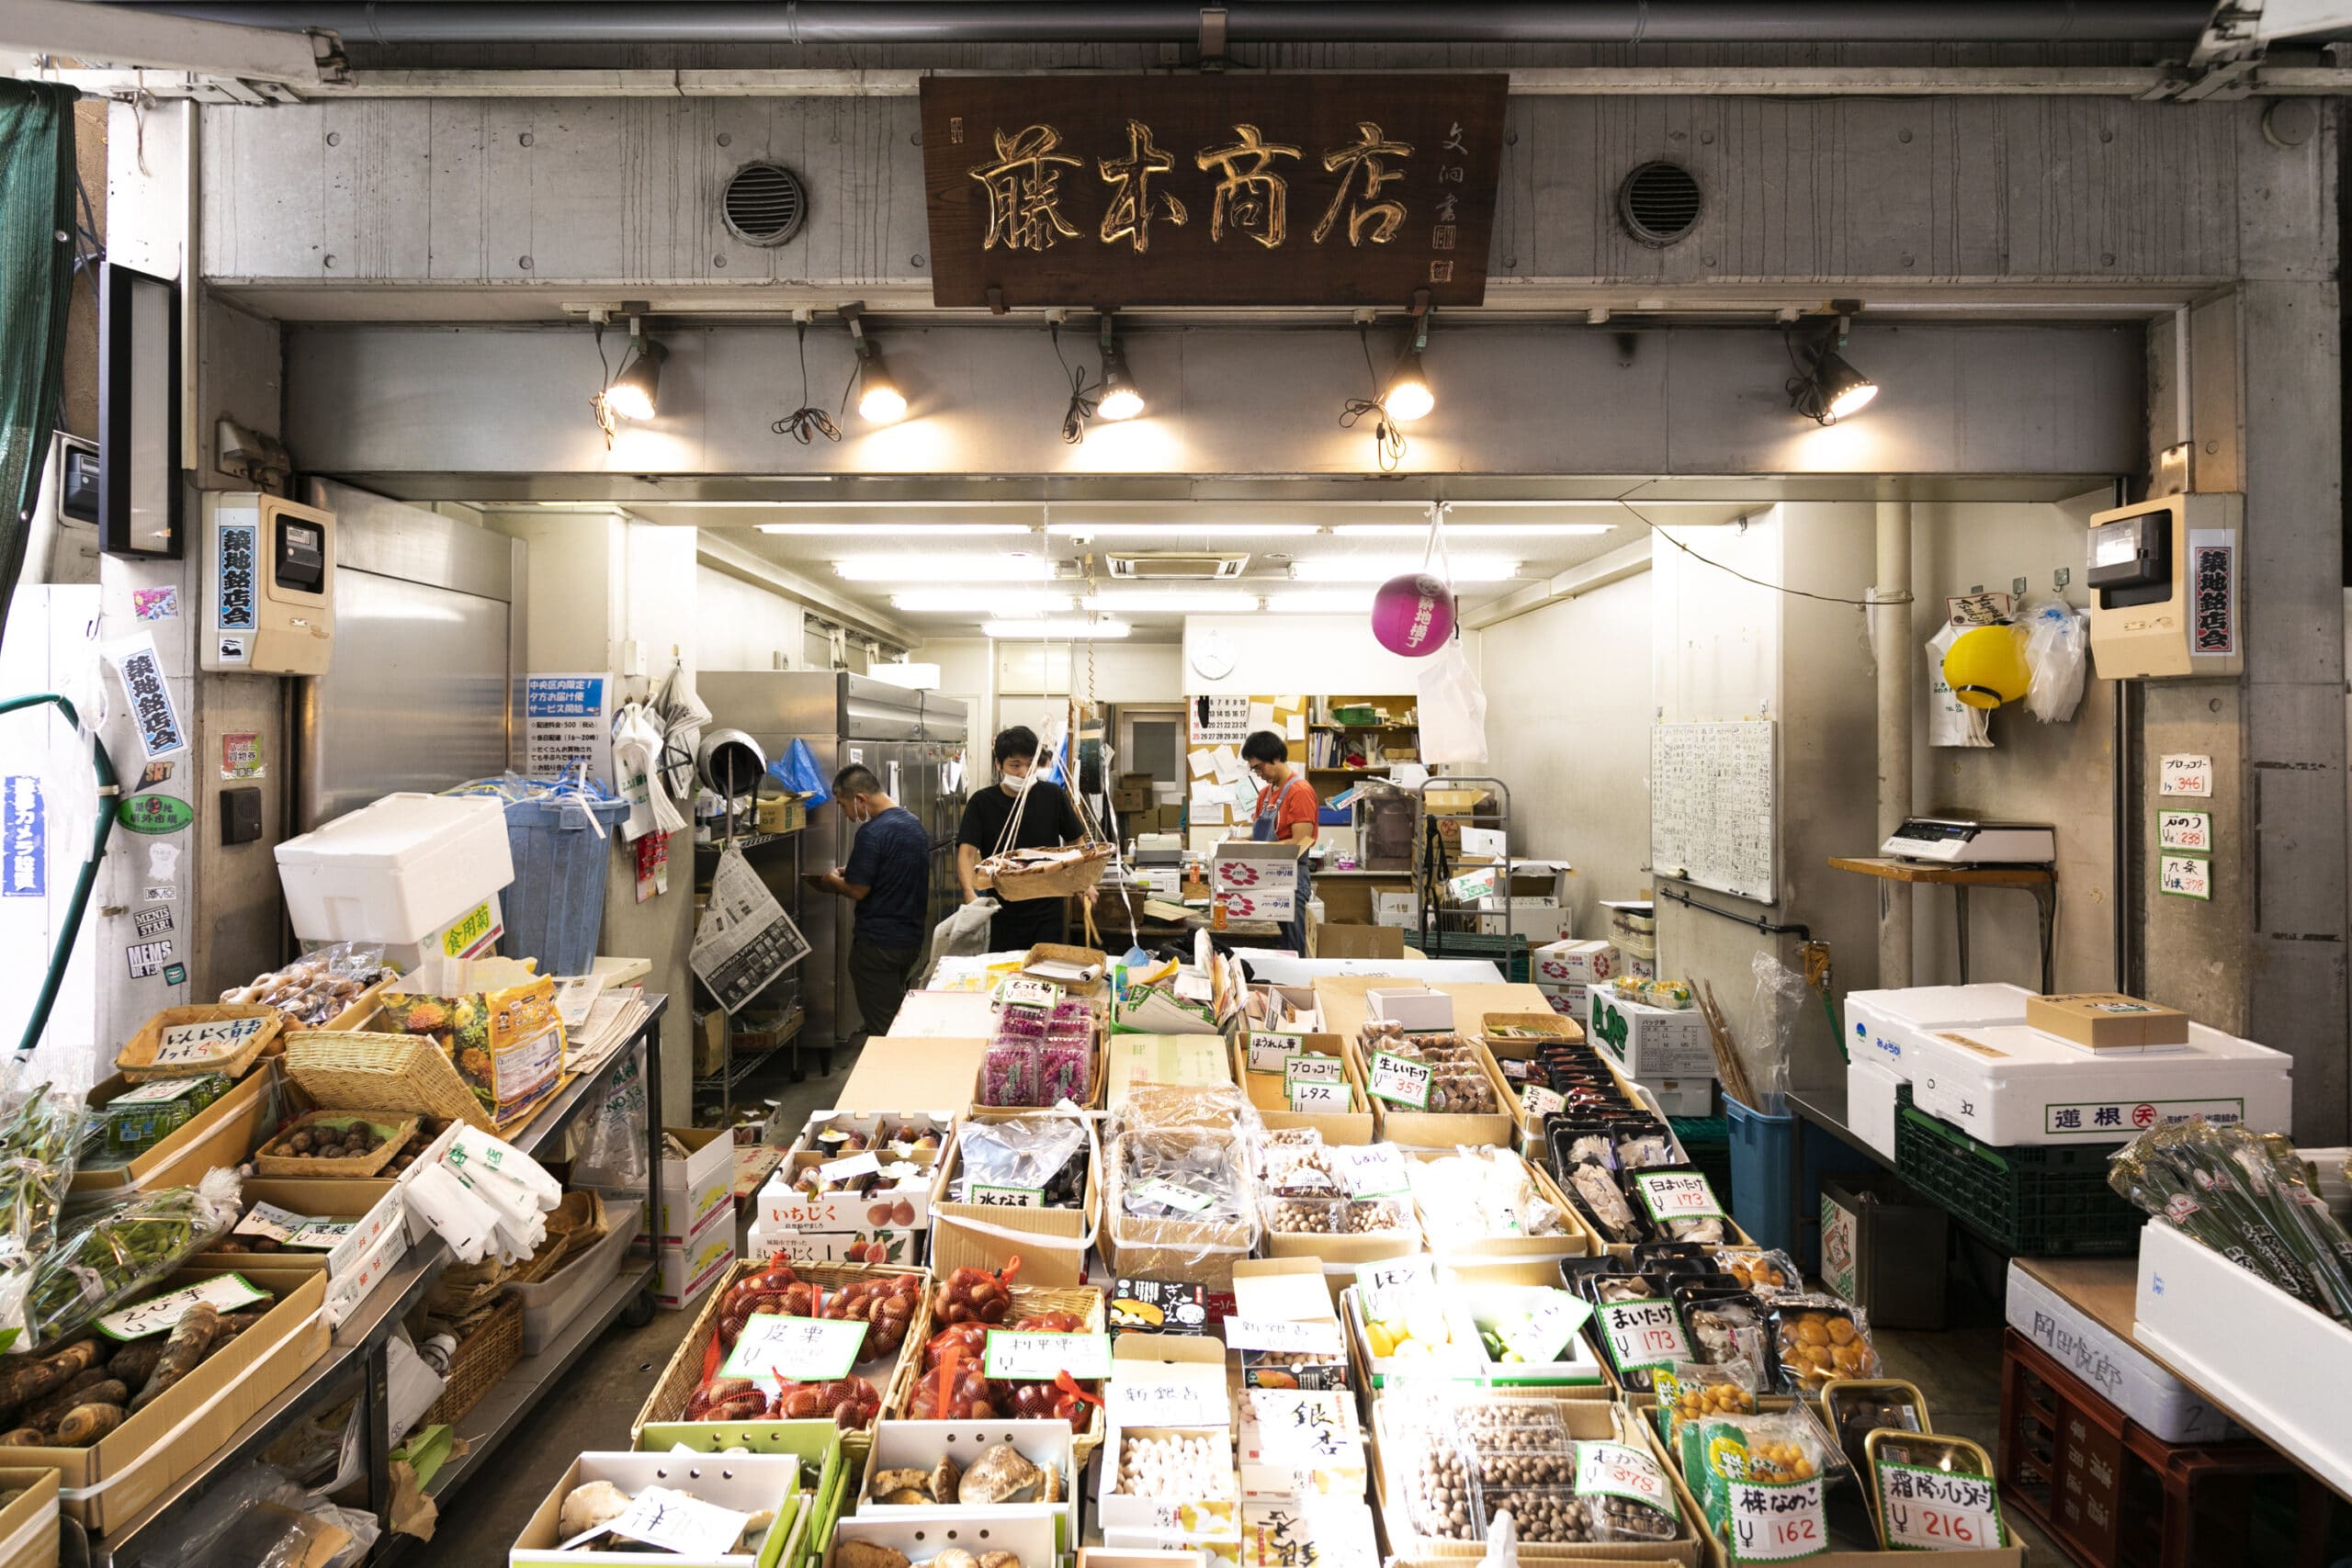 藤本商店 青果 妻物 生鮮品 お店を探す 築地場外市場 公式ホームページ